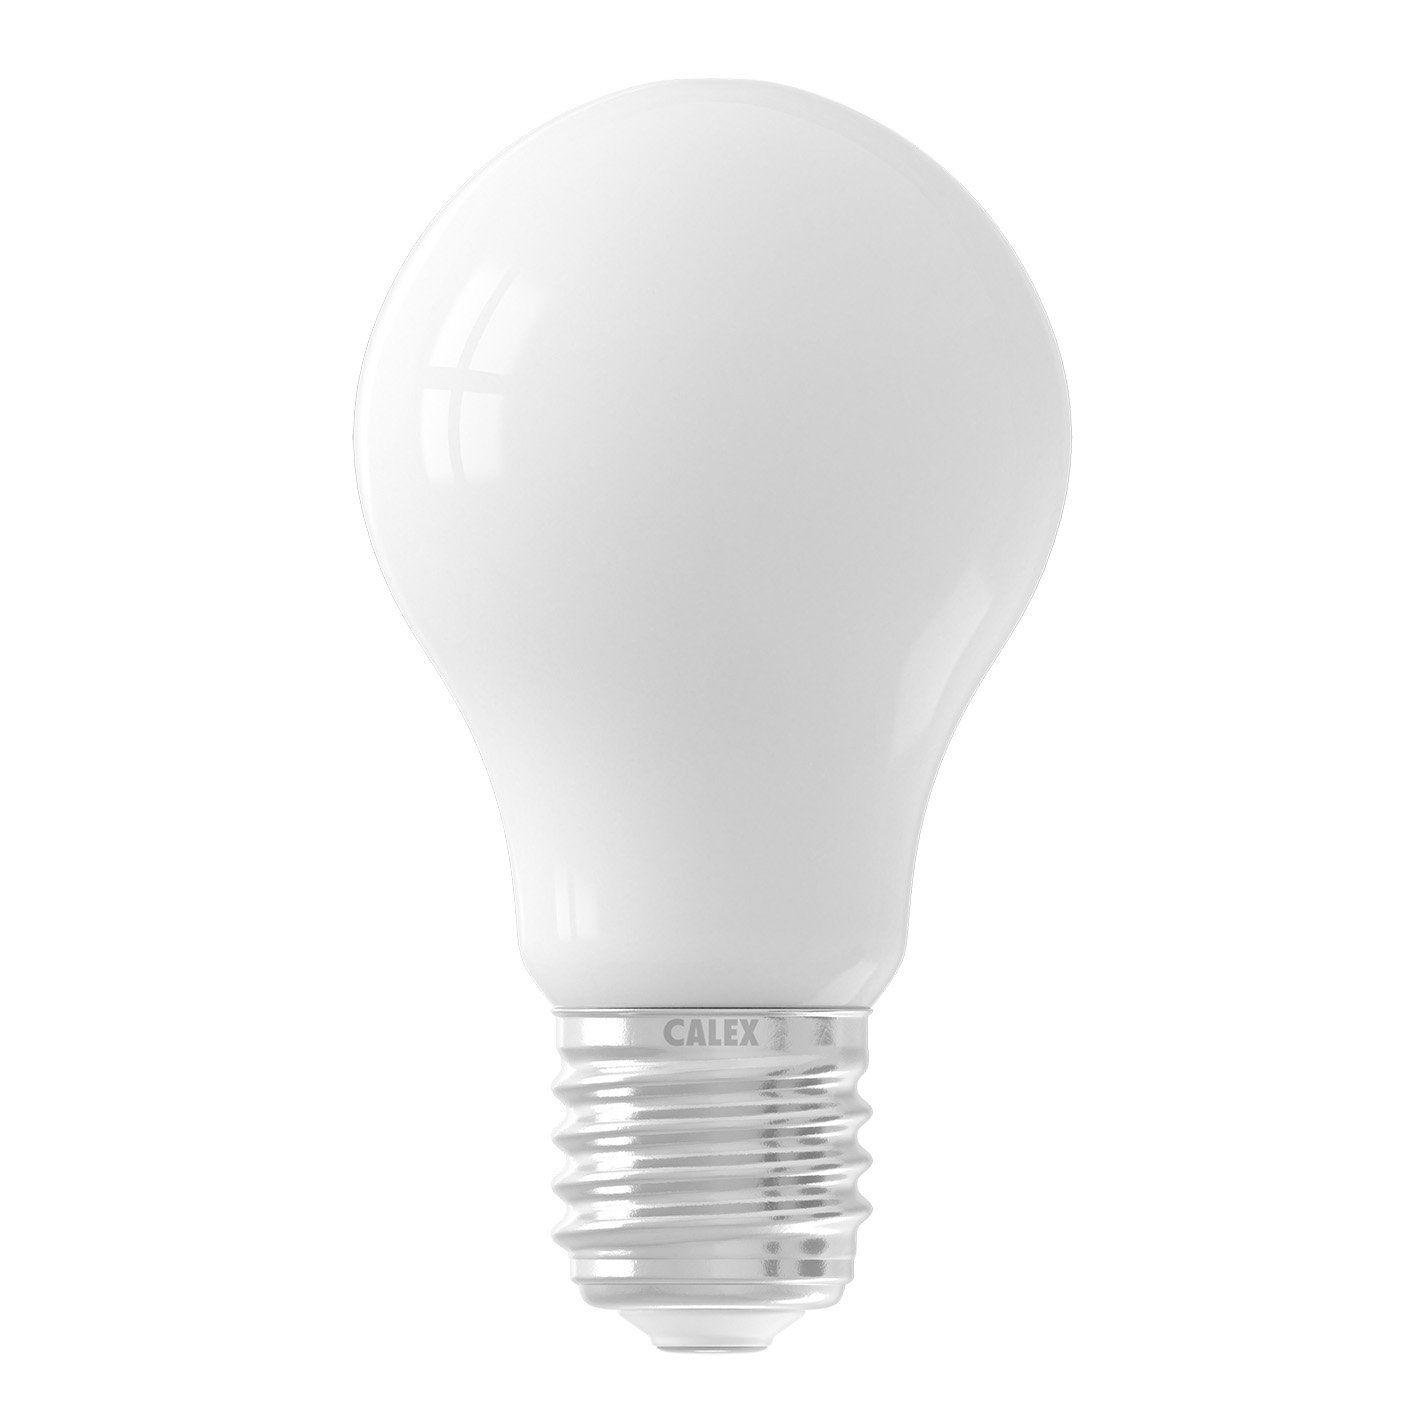 Ampoule LED E27 Bougie C38 5W - Blanc Chaud 2700K